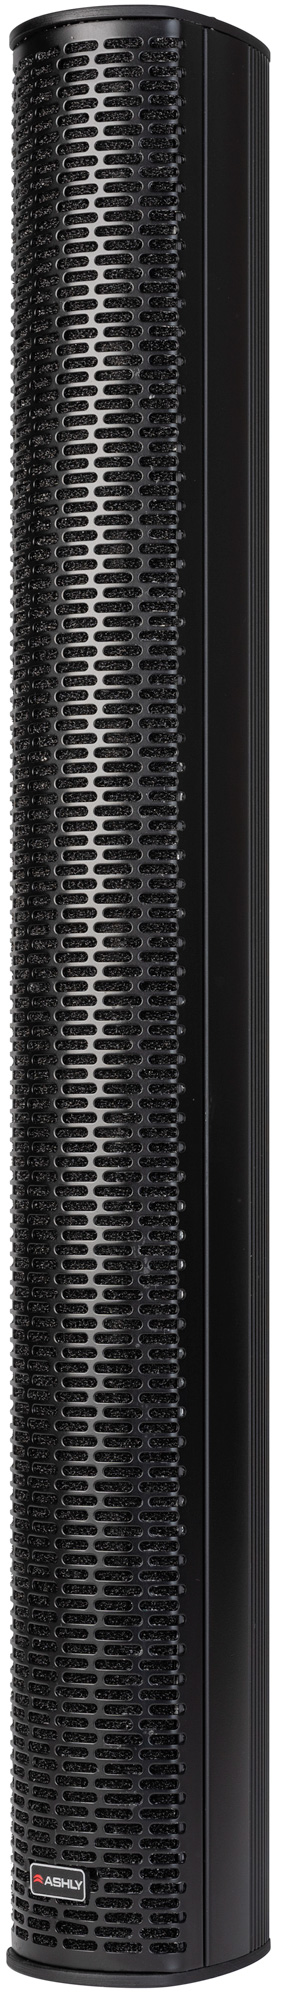 IS Series Dual-Ω Column Speakers + SP Subwoofer - ashly